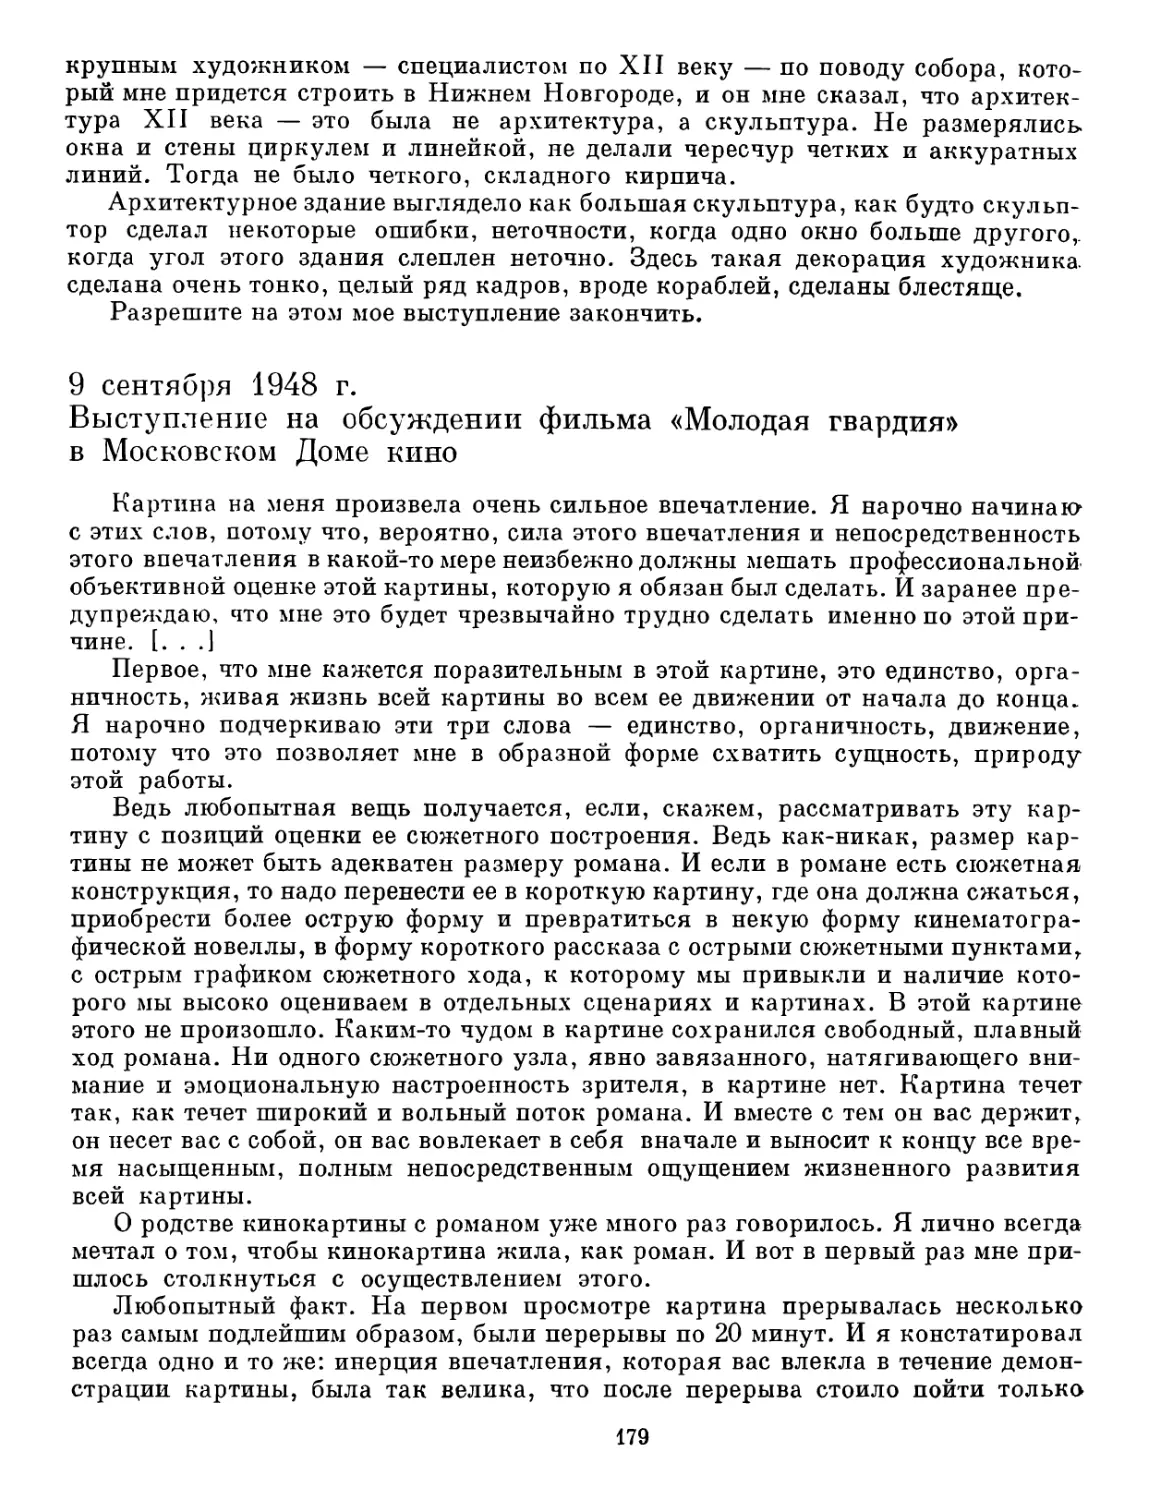 9 сентября 1948 г. Выступление на обсуждении фильма «Молодая гвардия» в Московском Доме кино